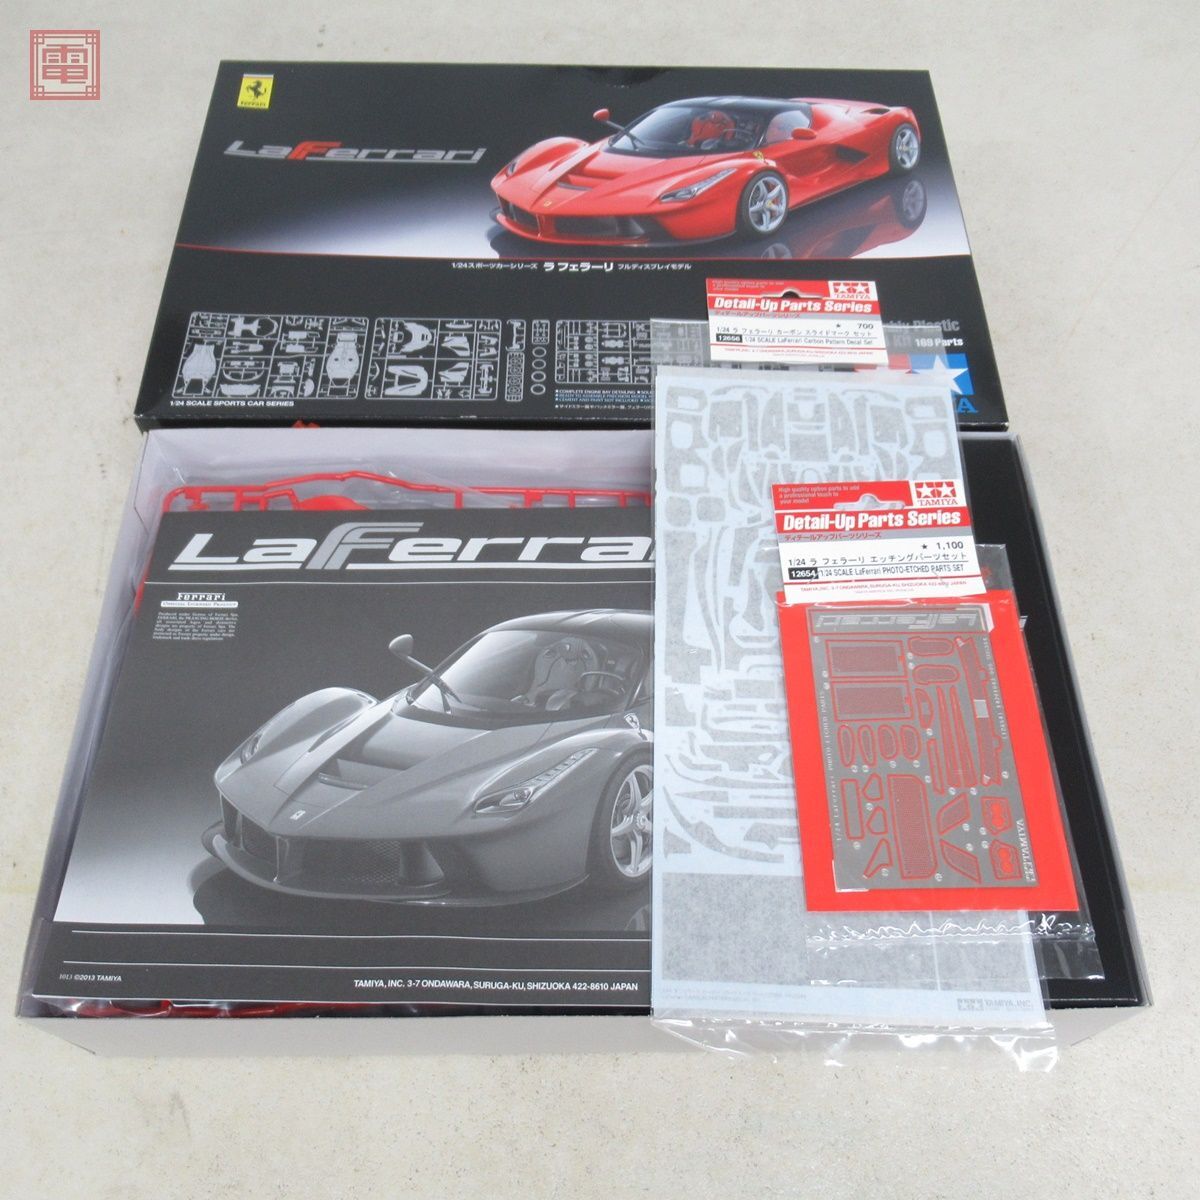  не собран Tamiya 1/24la Ferrari полный дисплей модель ITEM 24333 продается отдельно детали есть TAMIYA La Ferrari[20